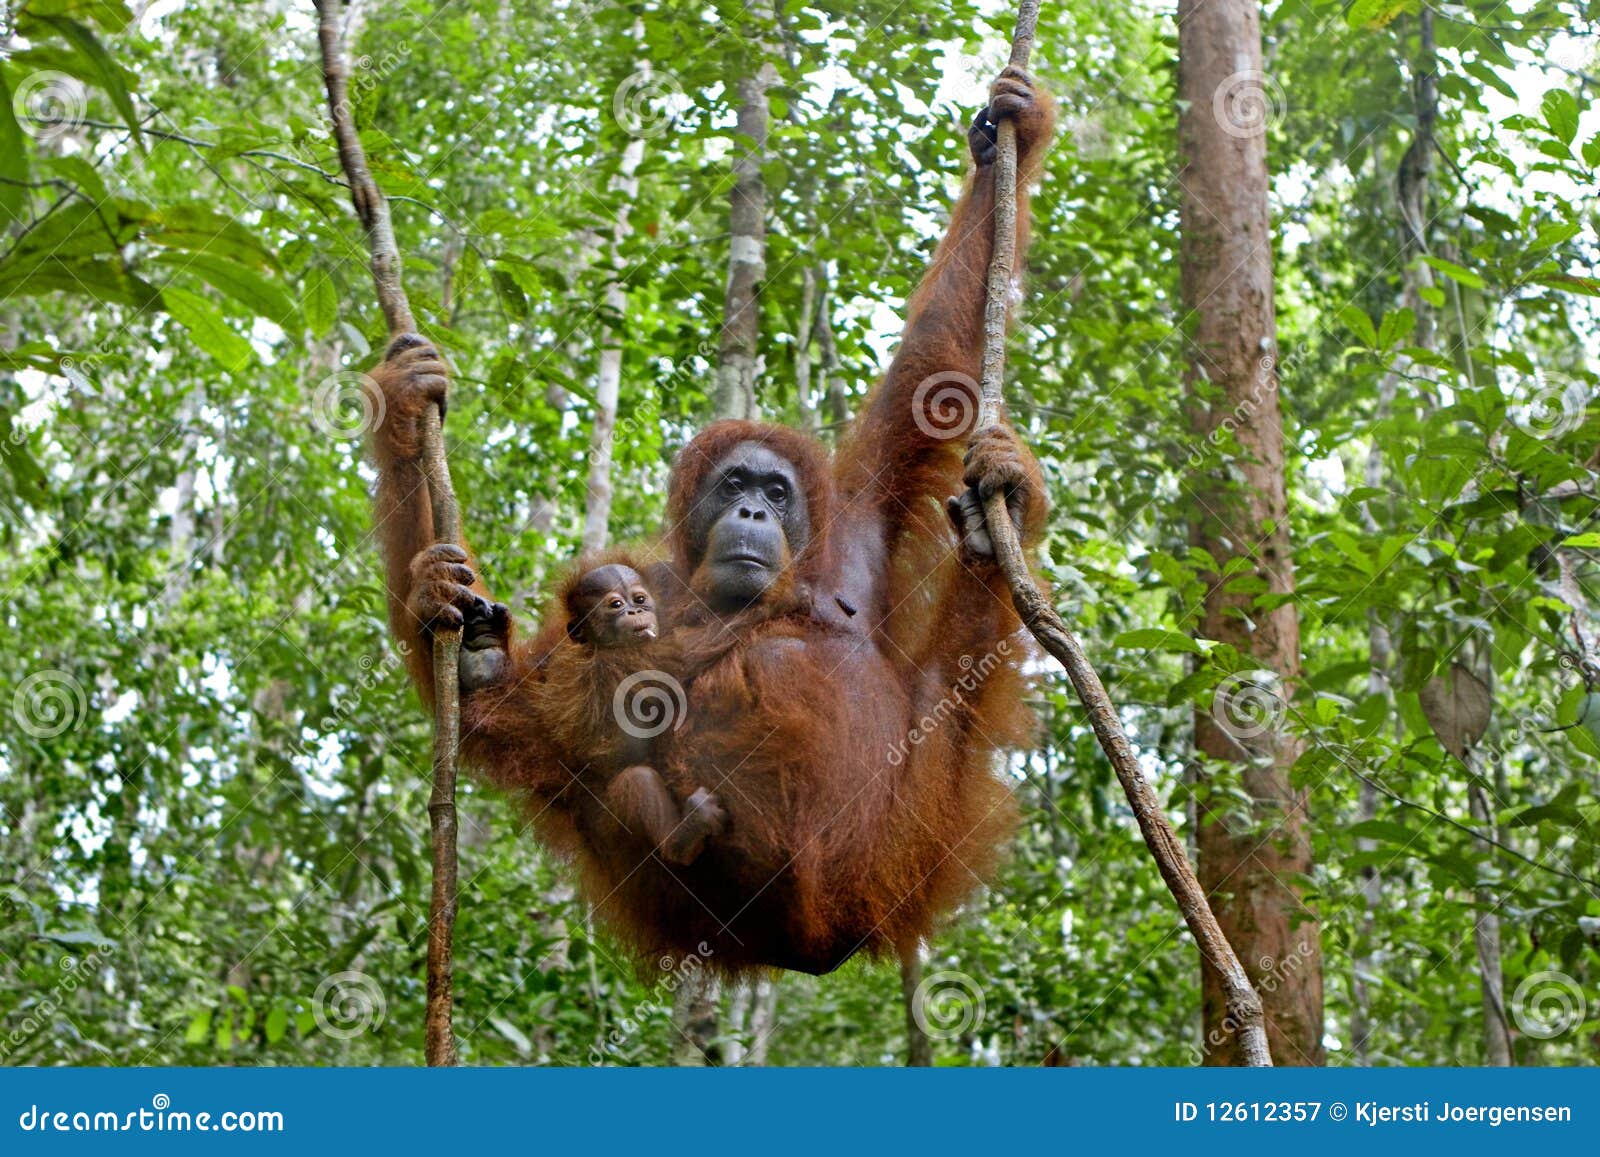 orangutan with her baby